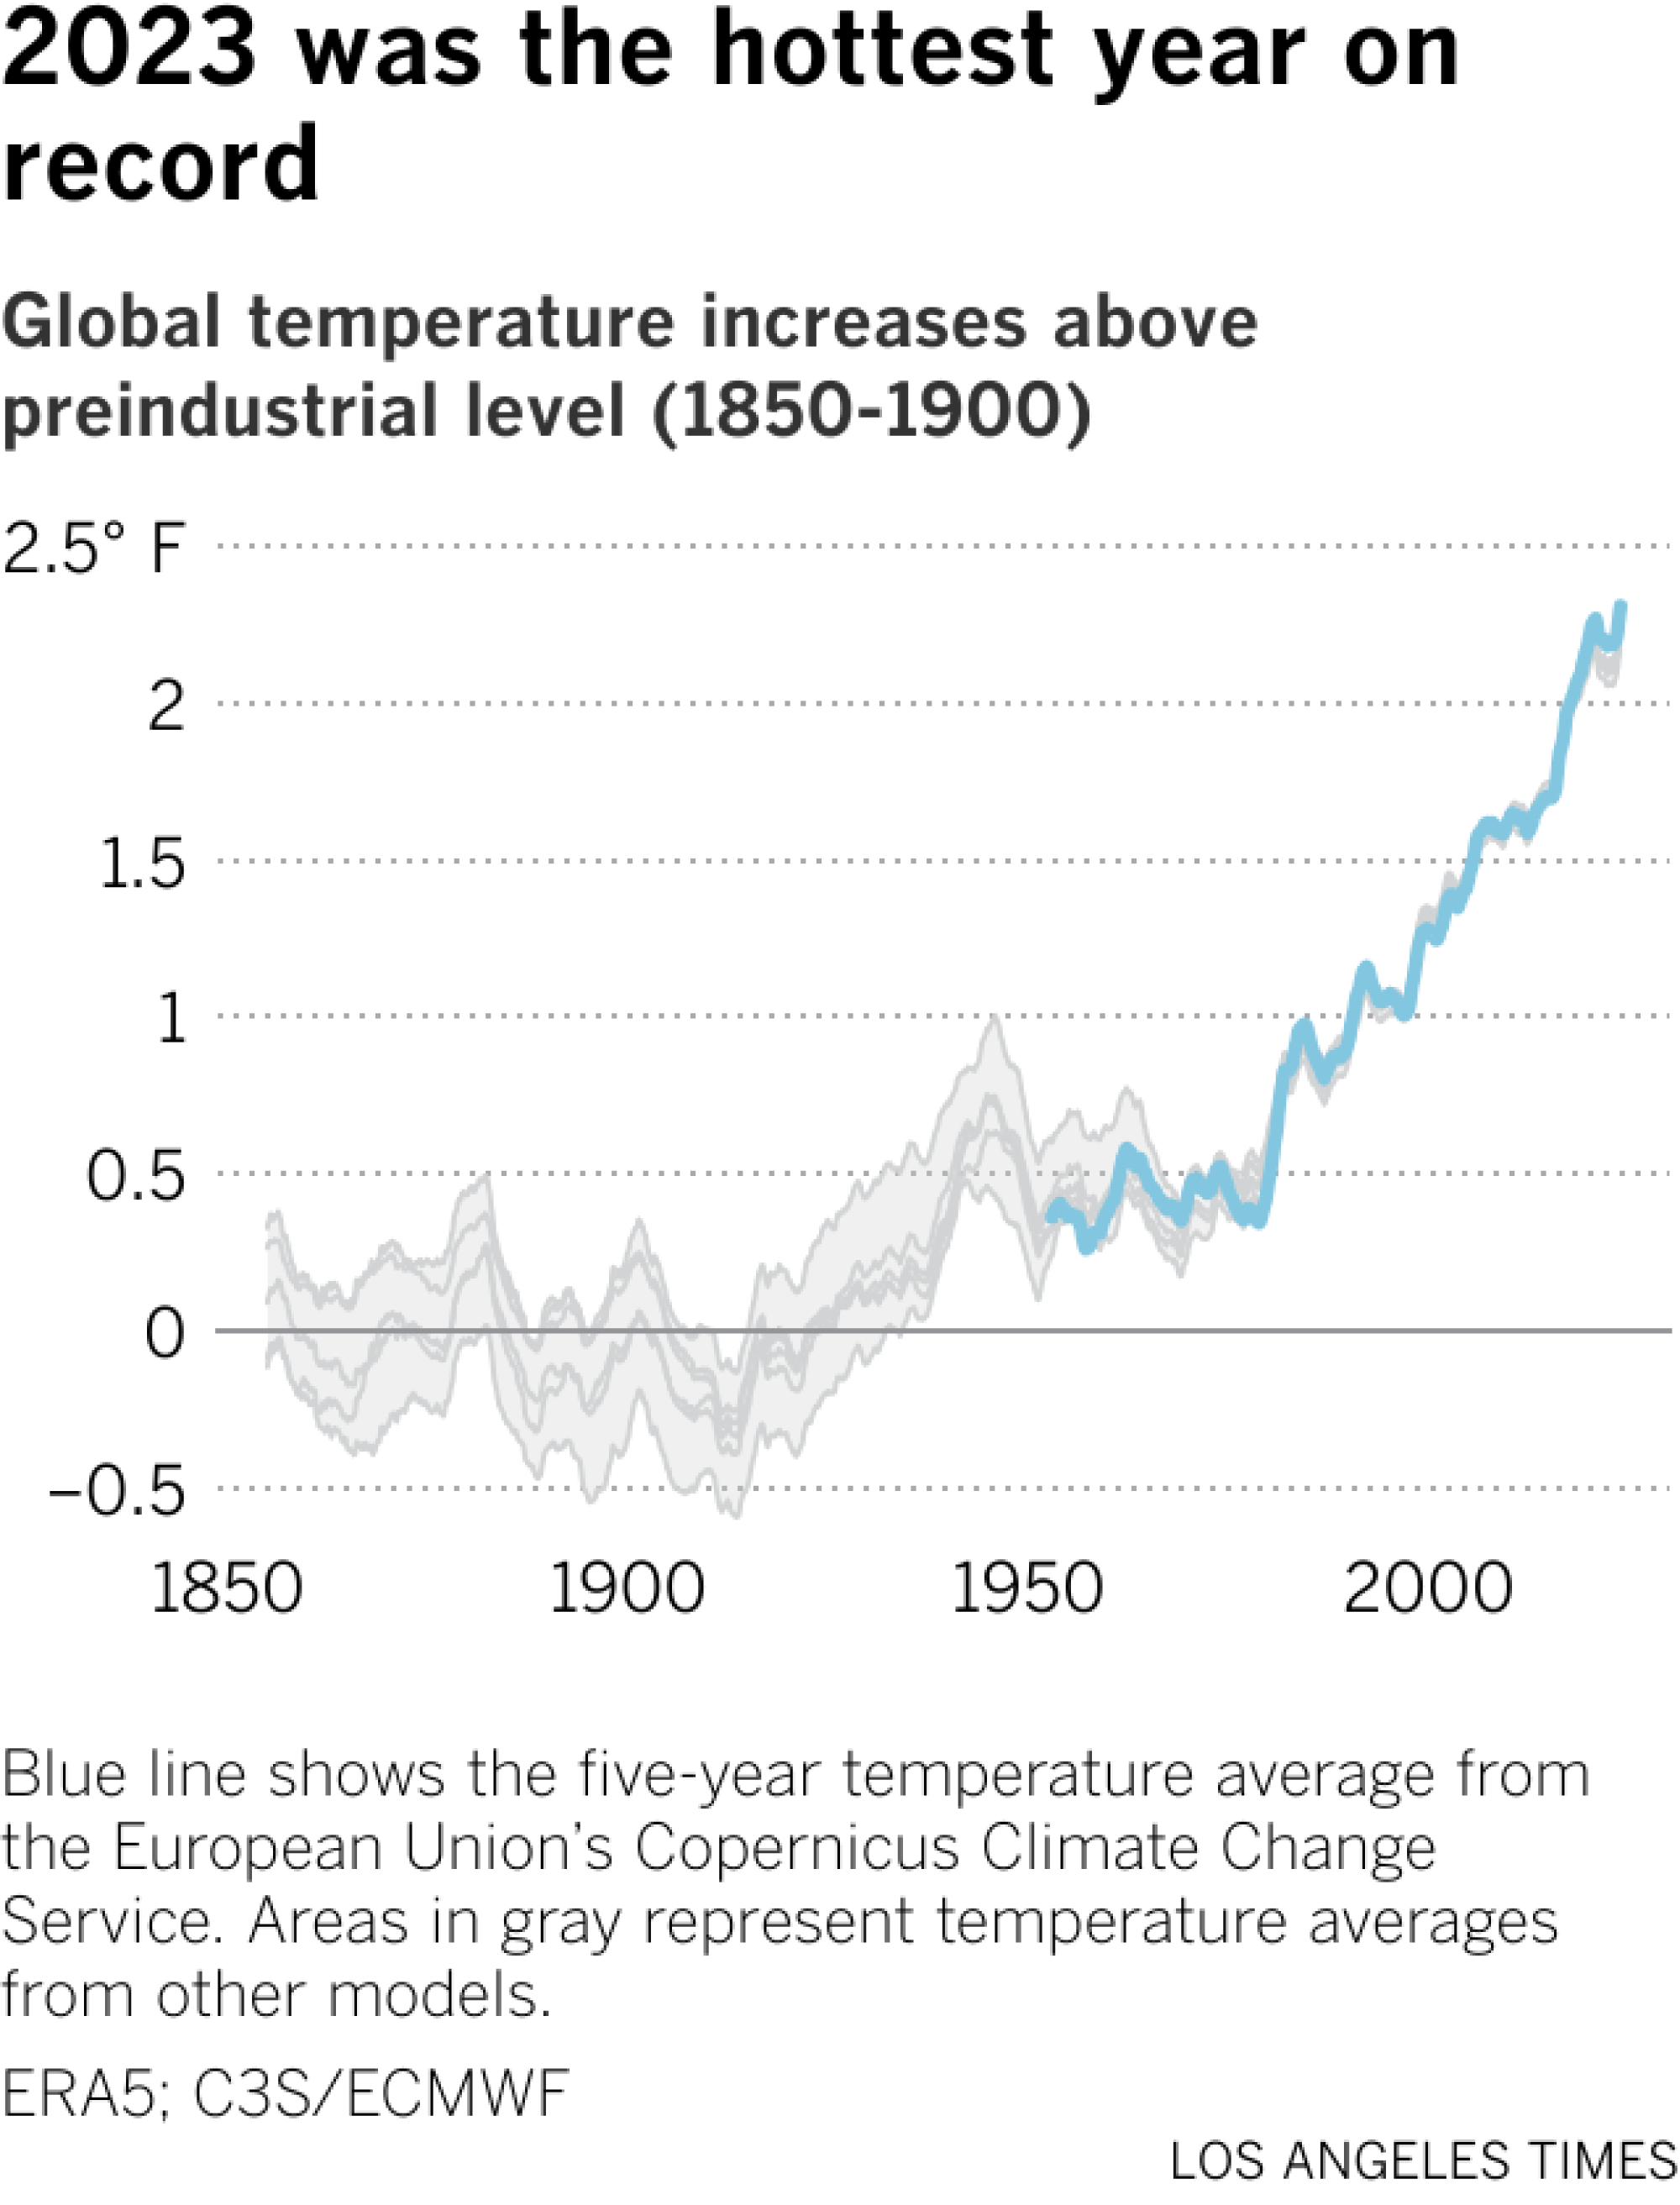 Le graphique linéaire montre les changements de température moyenne estimés par Copernic et d'autres sources depuis 1850. Les températures augmentent régulièrement depuis 1975 environ.